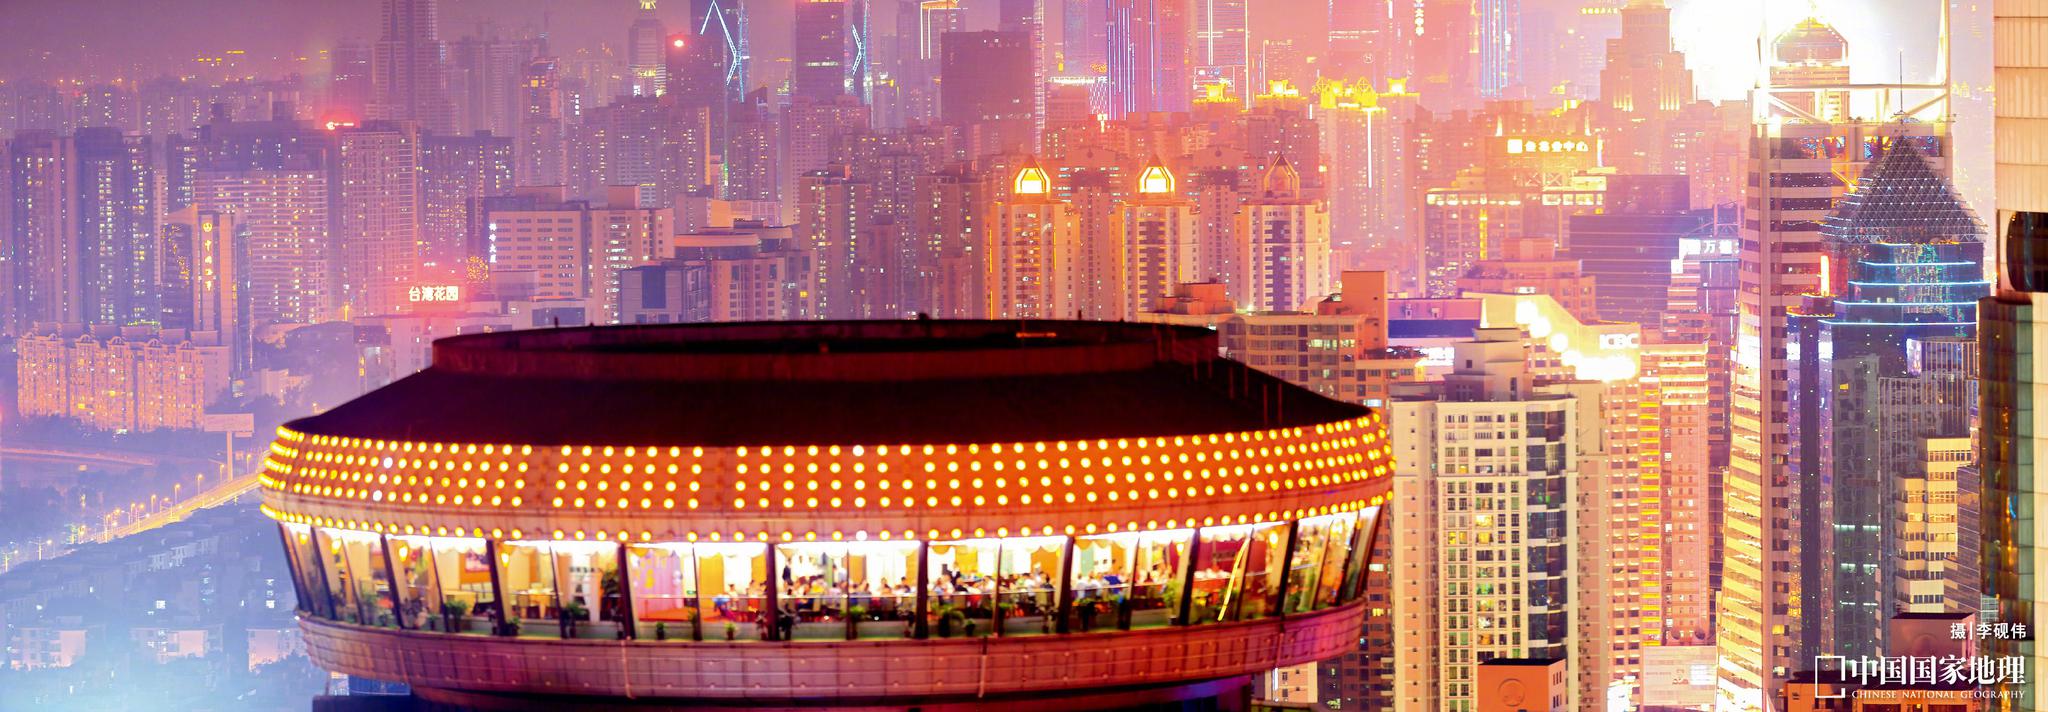 深圳的国贸大厦53层有中国最早的旋转餐厅.上世纪80年代